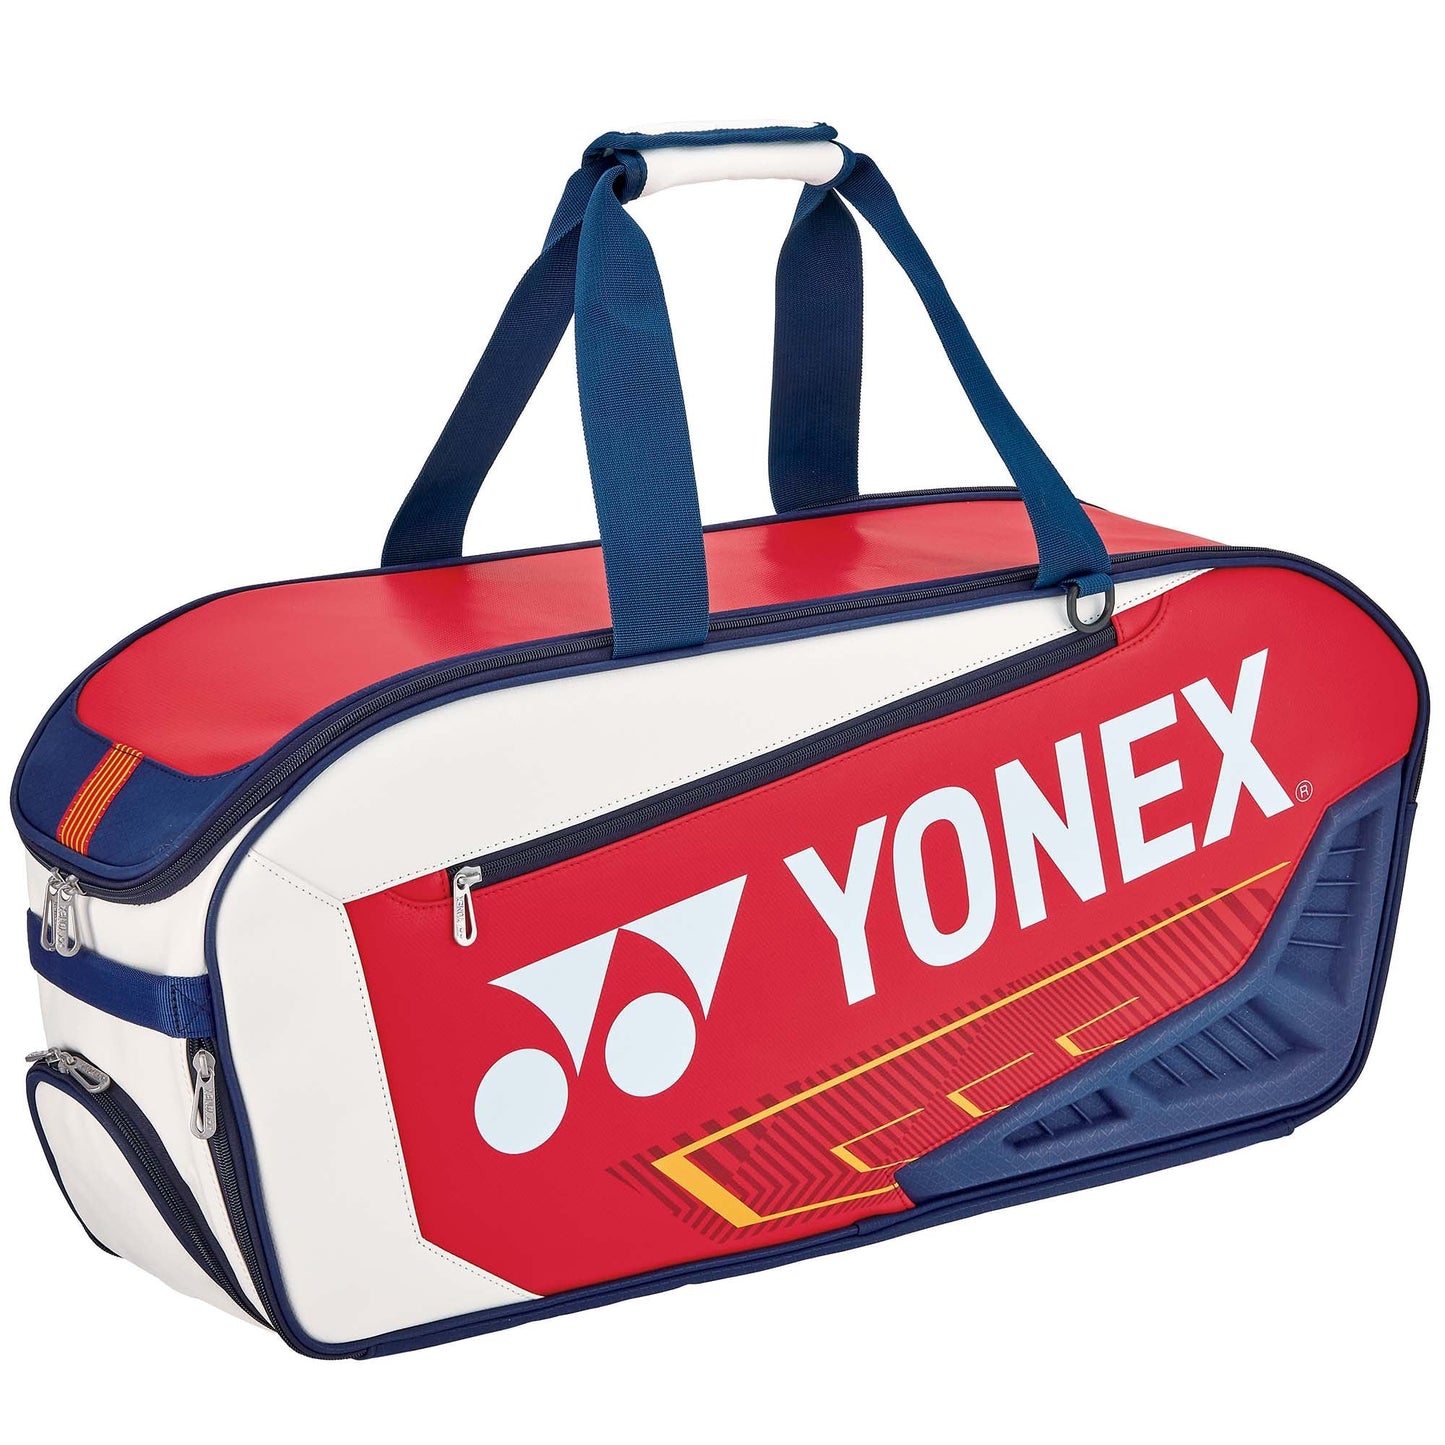 YONEX 专家比赛包 BAG02331 [白色/海军蓝/红色]